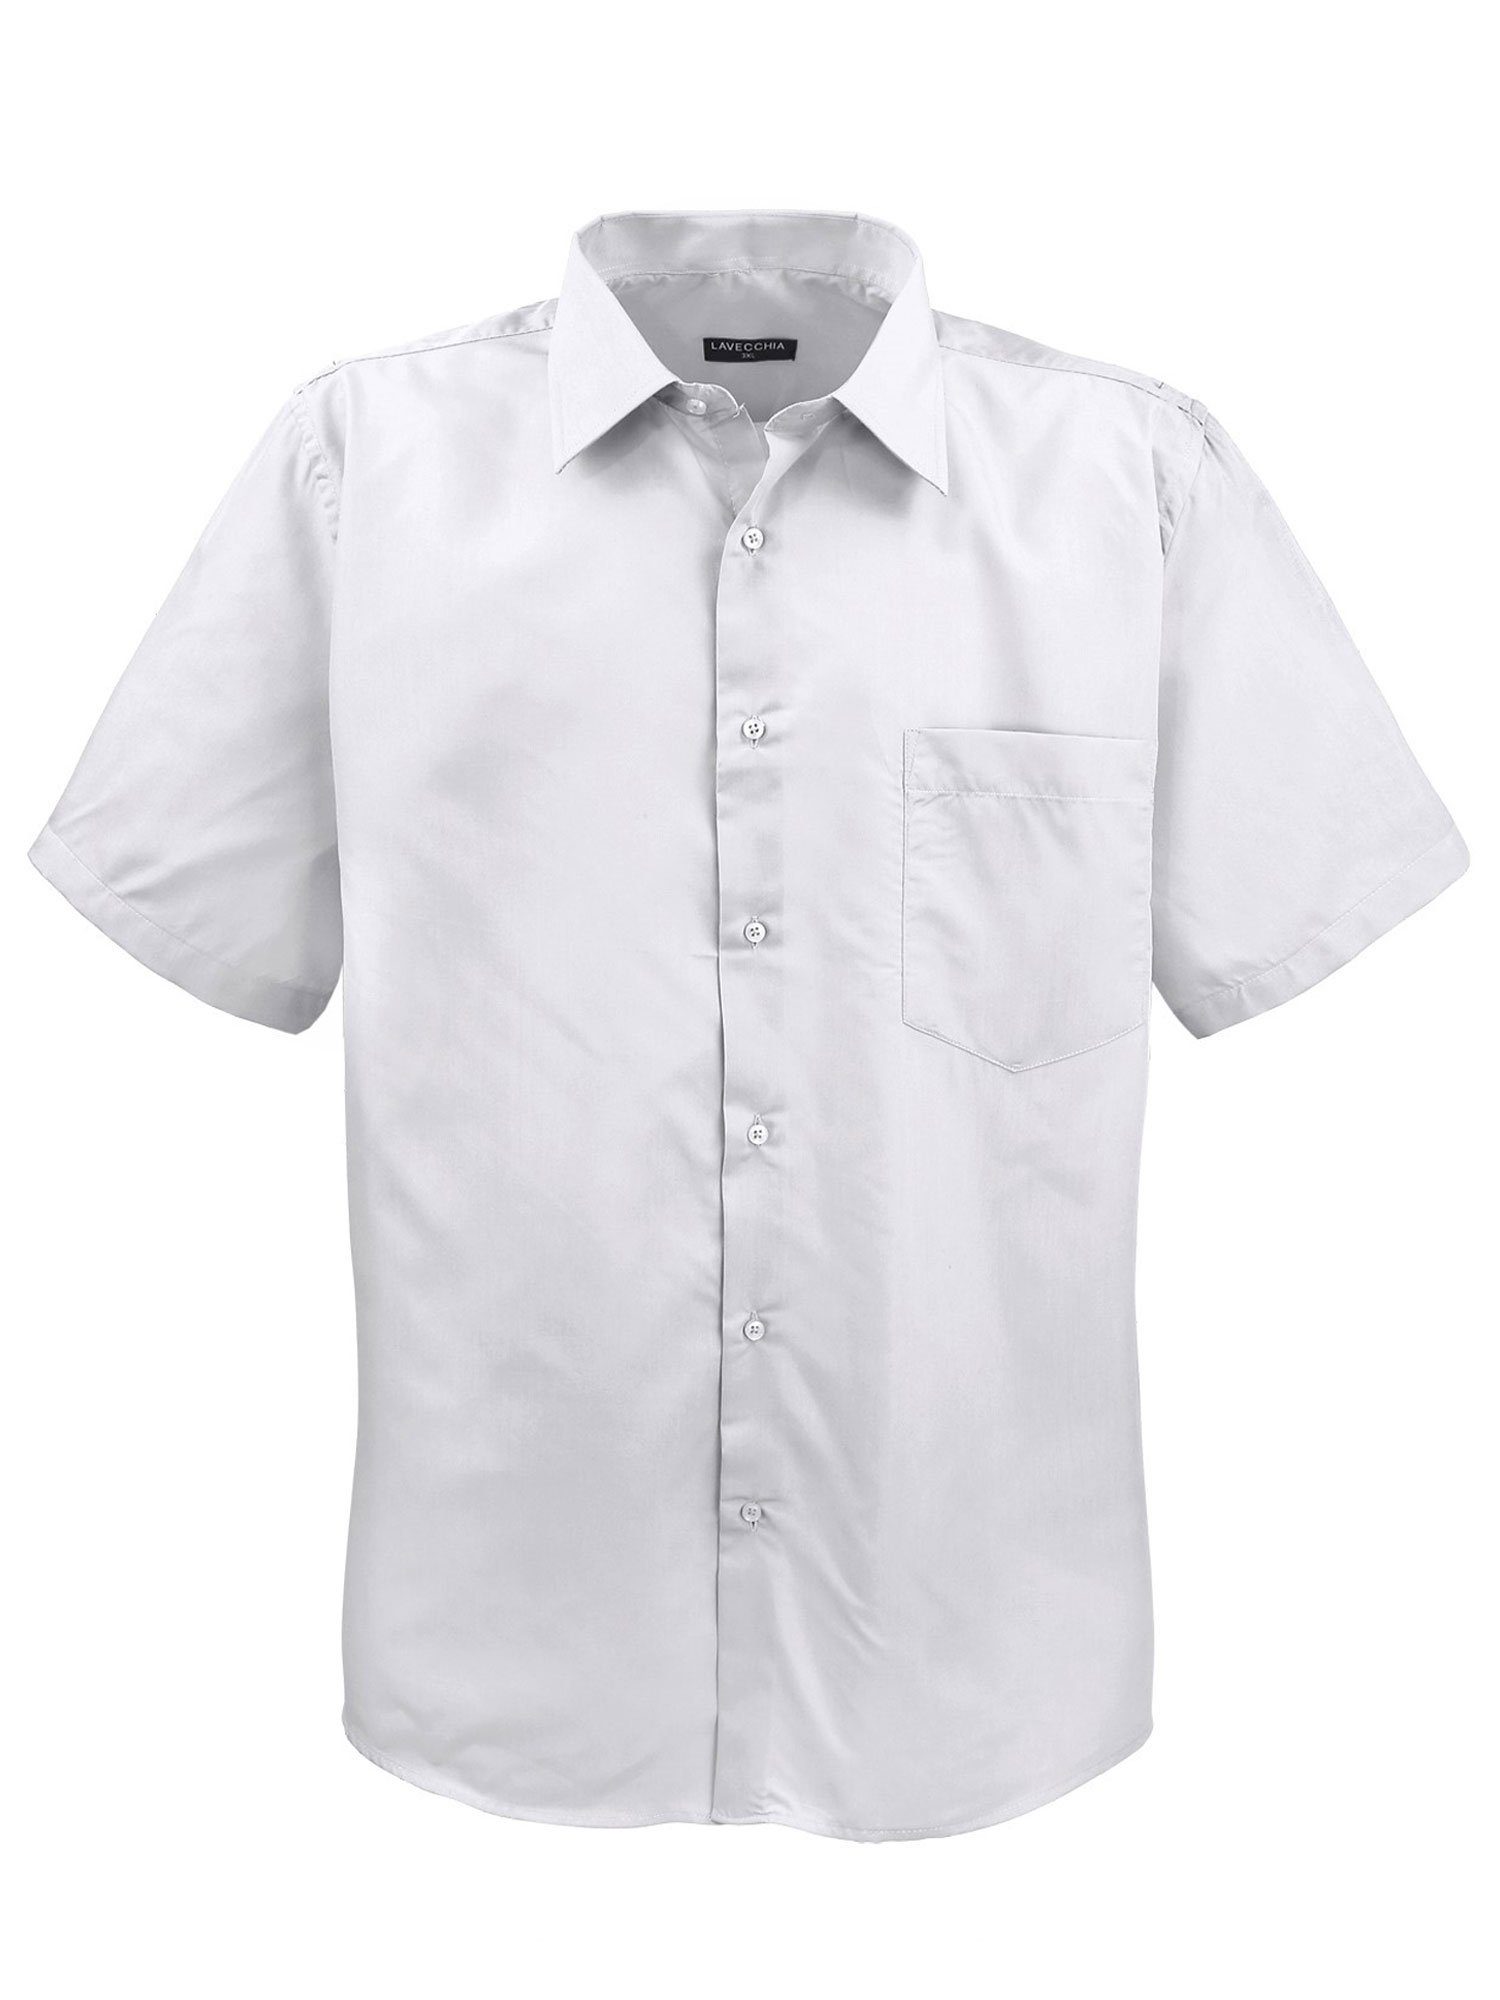 Lavecchia Kurzarmhemd Übergrößen Herren Hemd Hka-14 Basic Herrenhemd